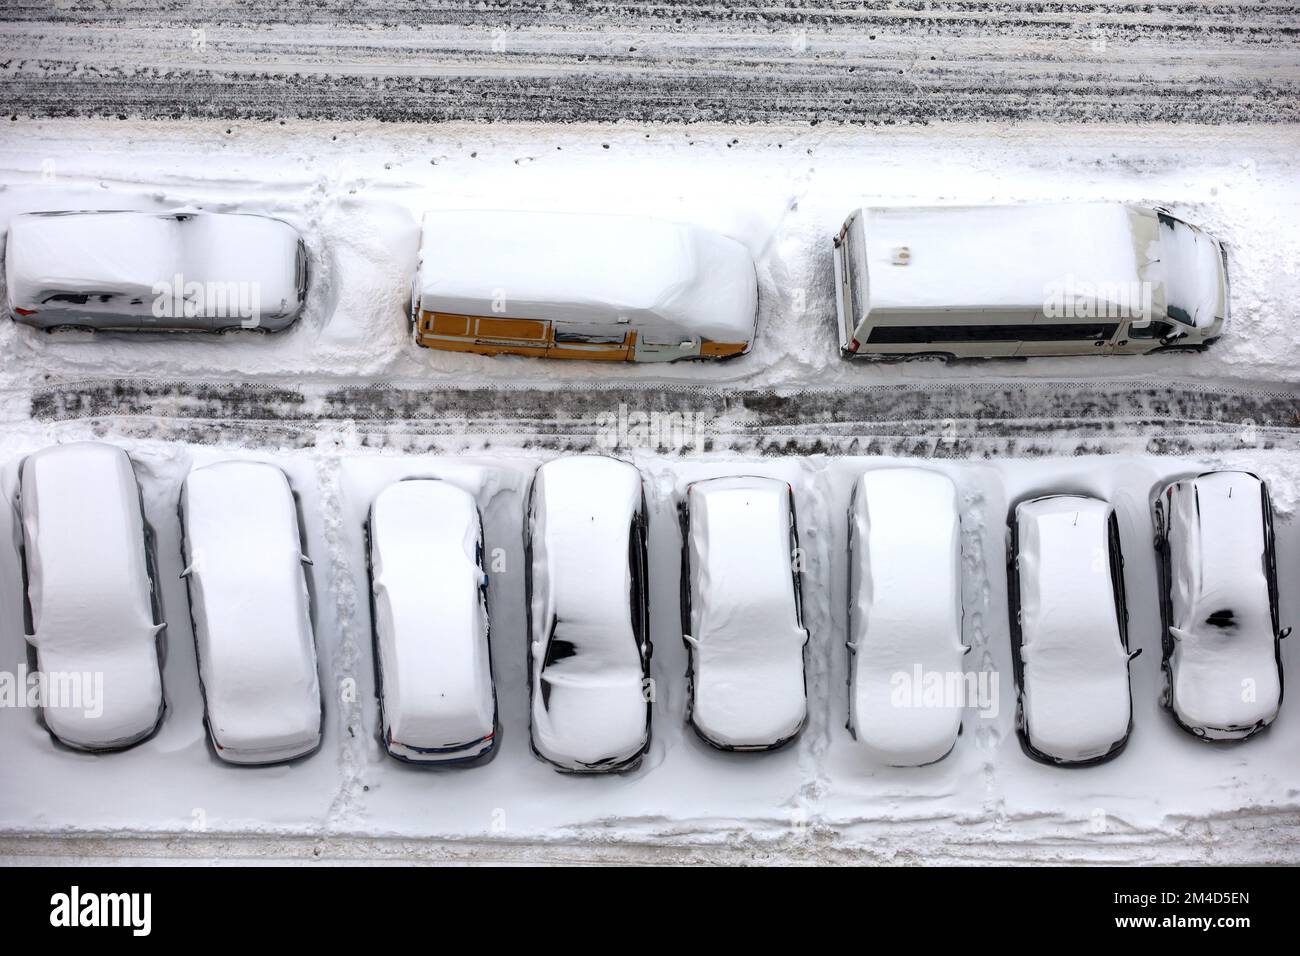 Vue sur les voitures de suite sur un parking couvert de neige, vue de dessus. Chute de neige dans une ville Banque D'Images